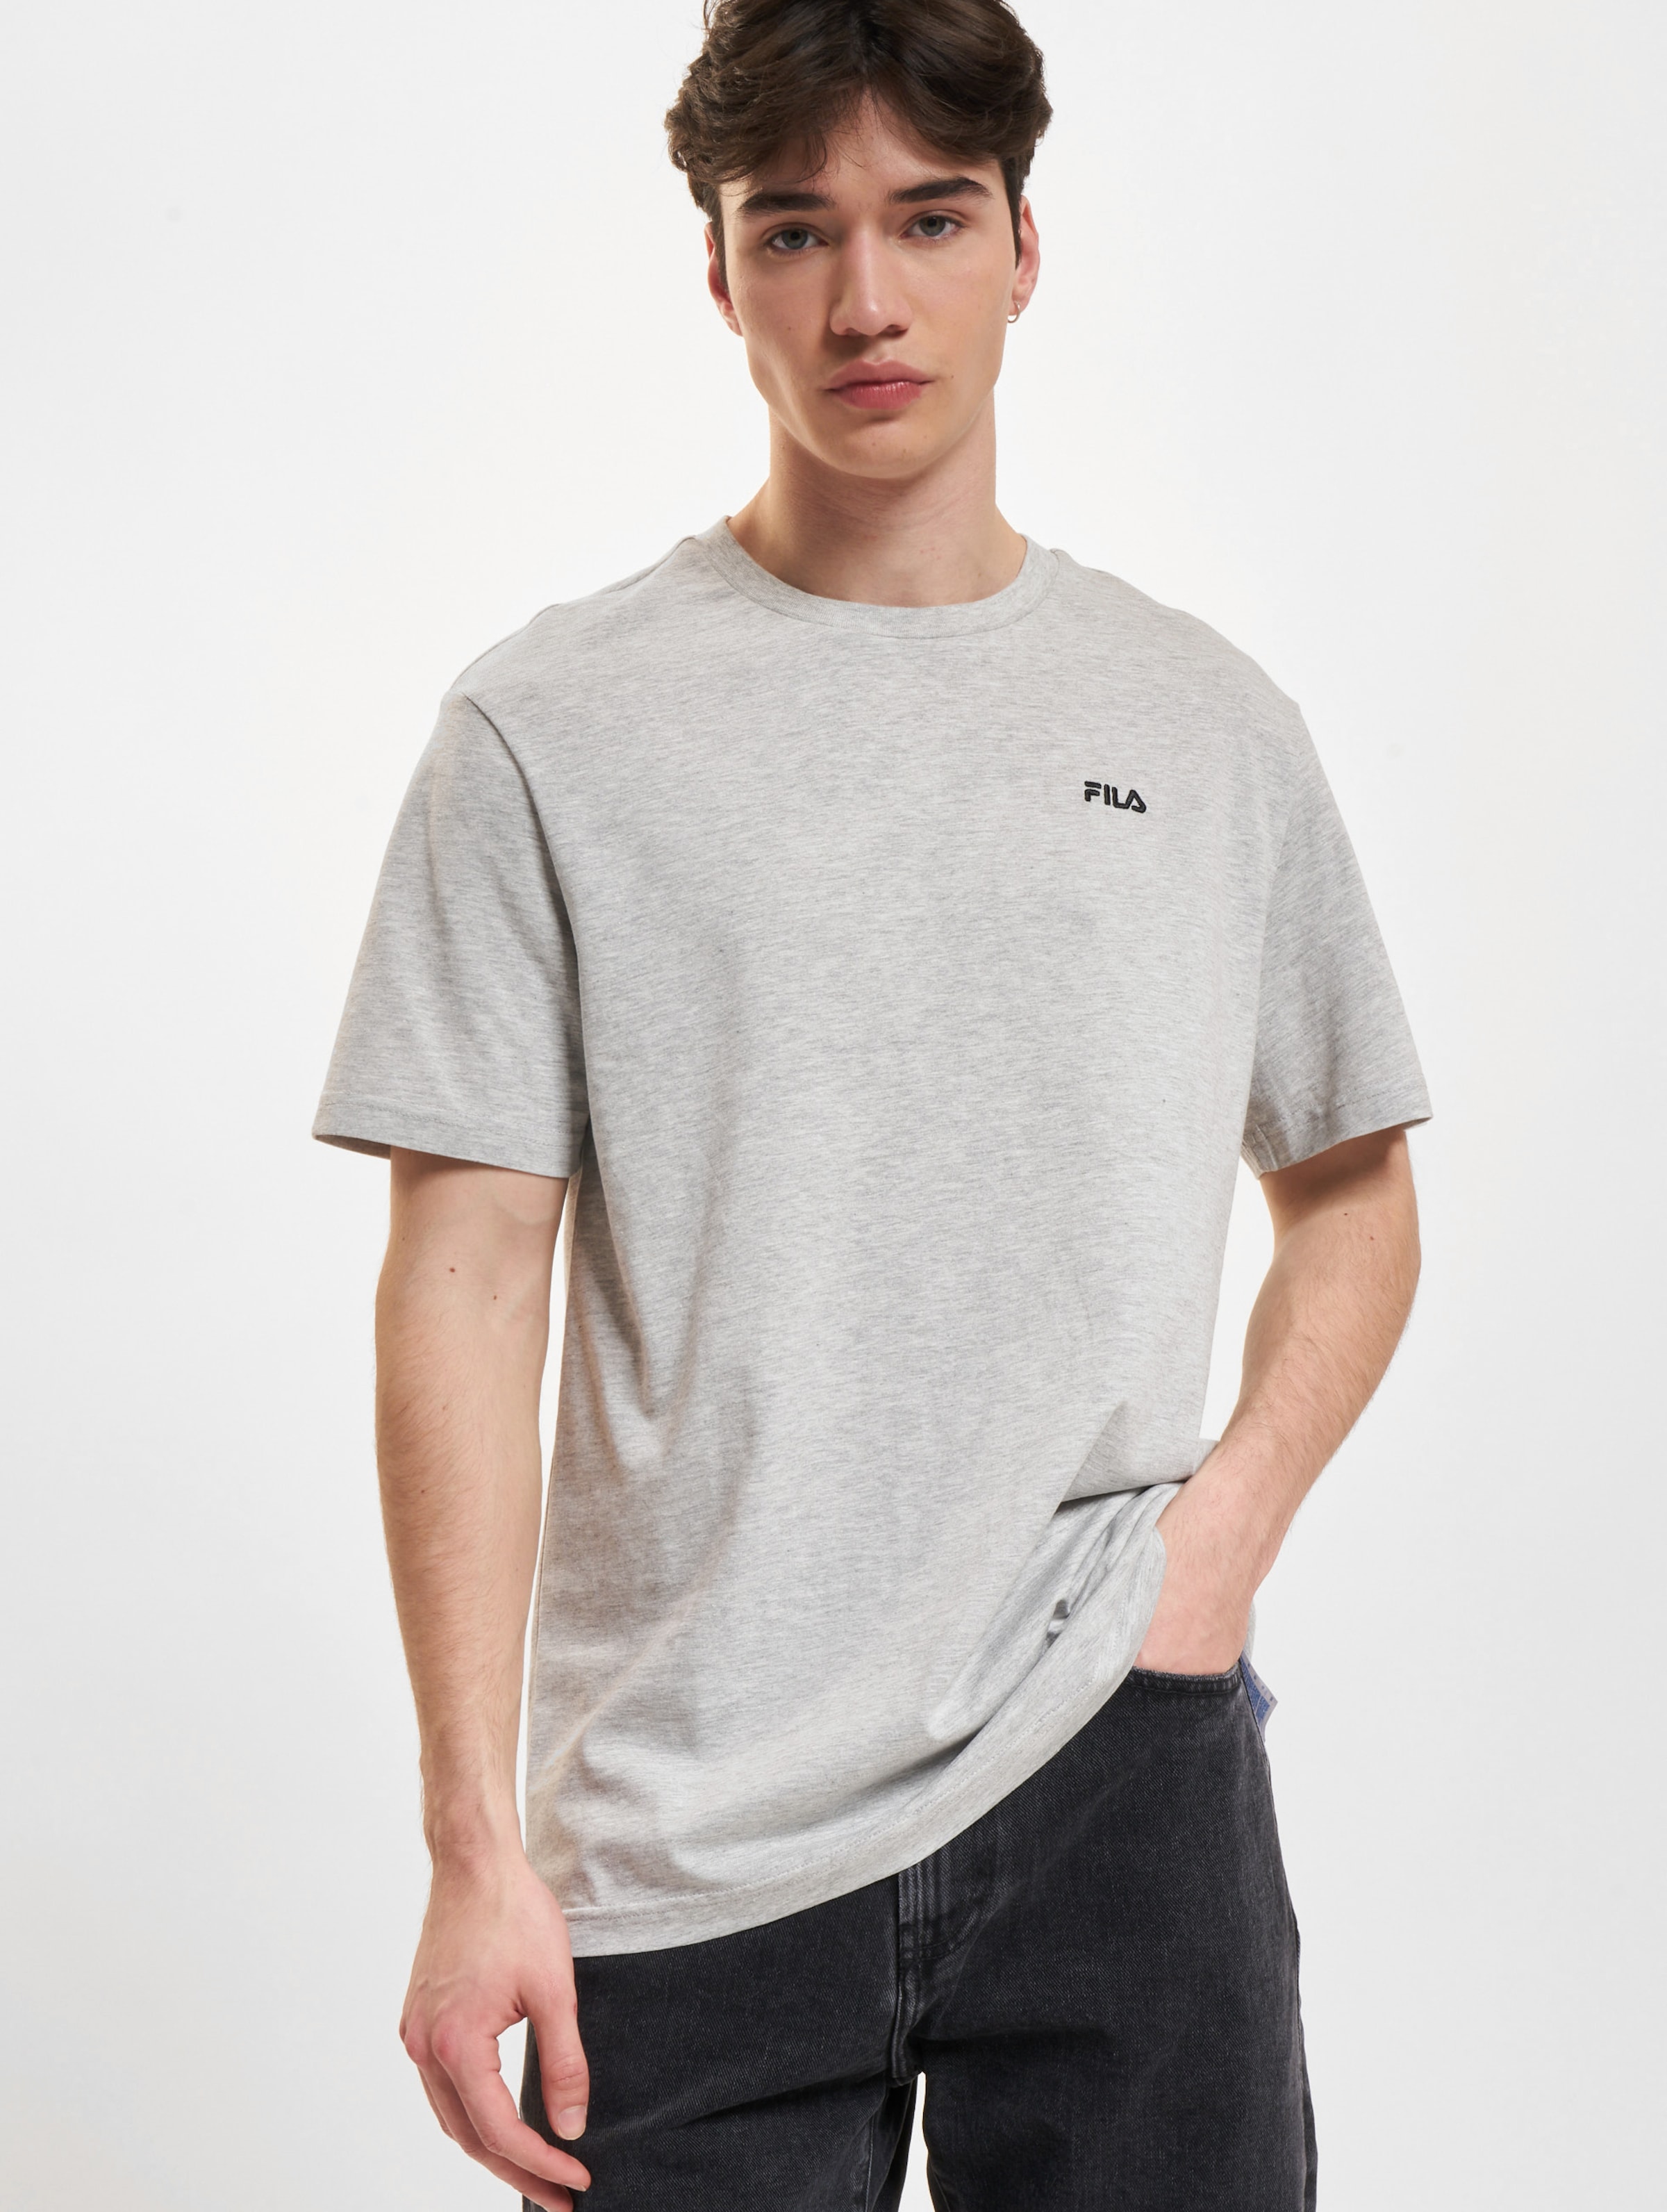 FILA Fila Berloz T-Shirt Männer,Unisex op kleur grijs, Maat XL